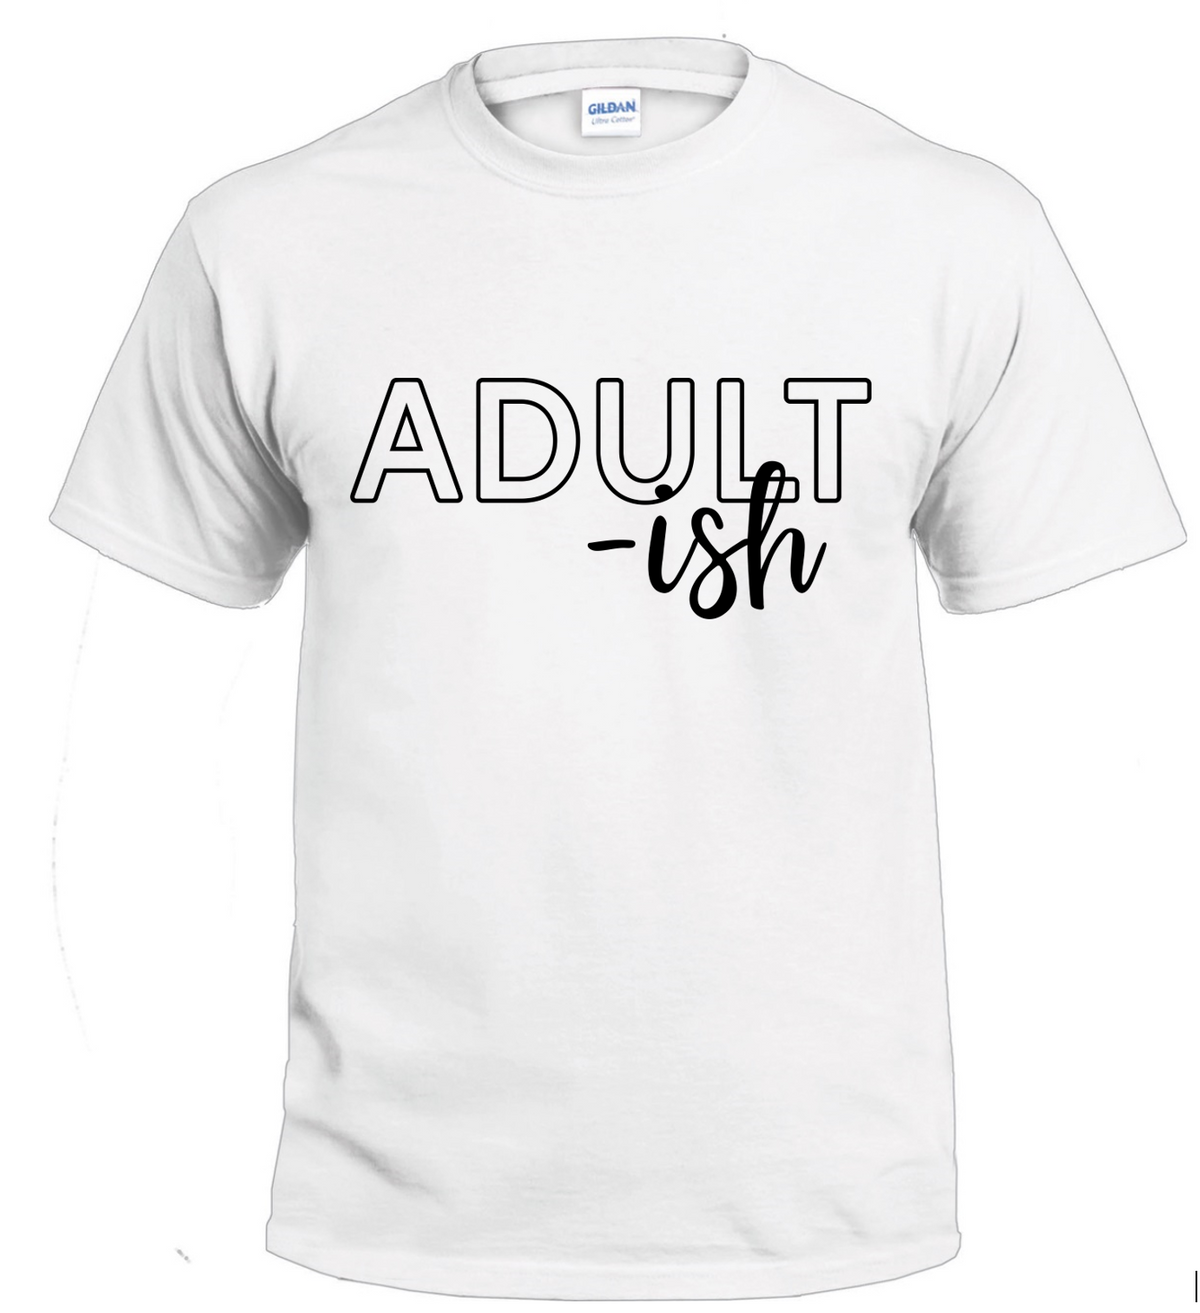 Adult-ish Sassy t-shirt